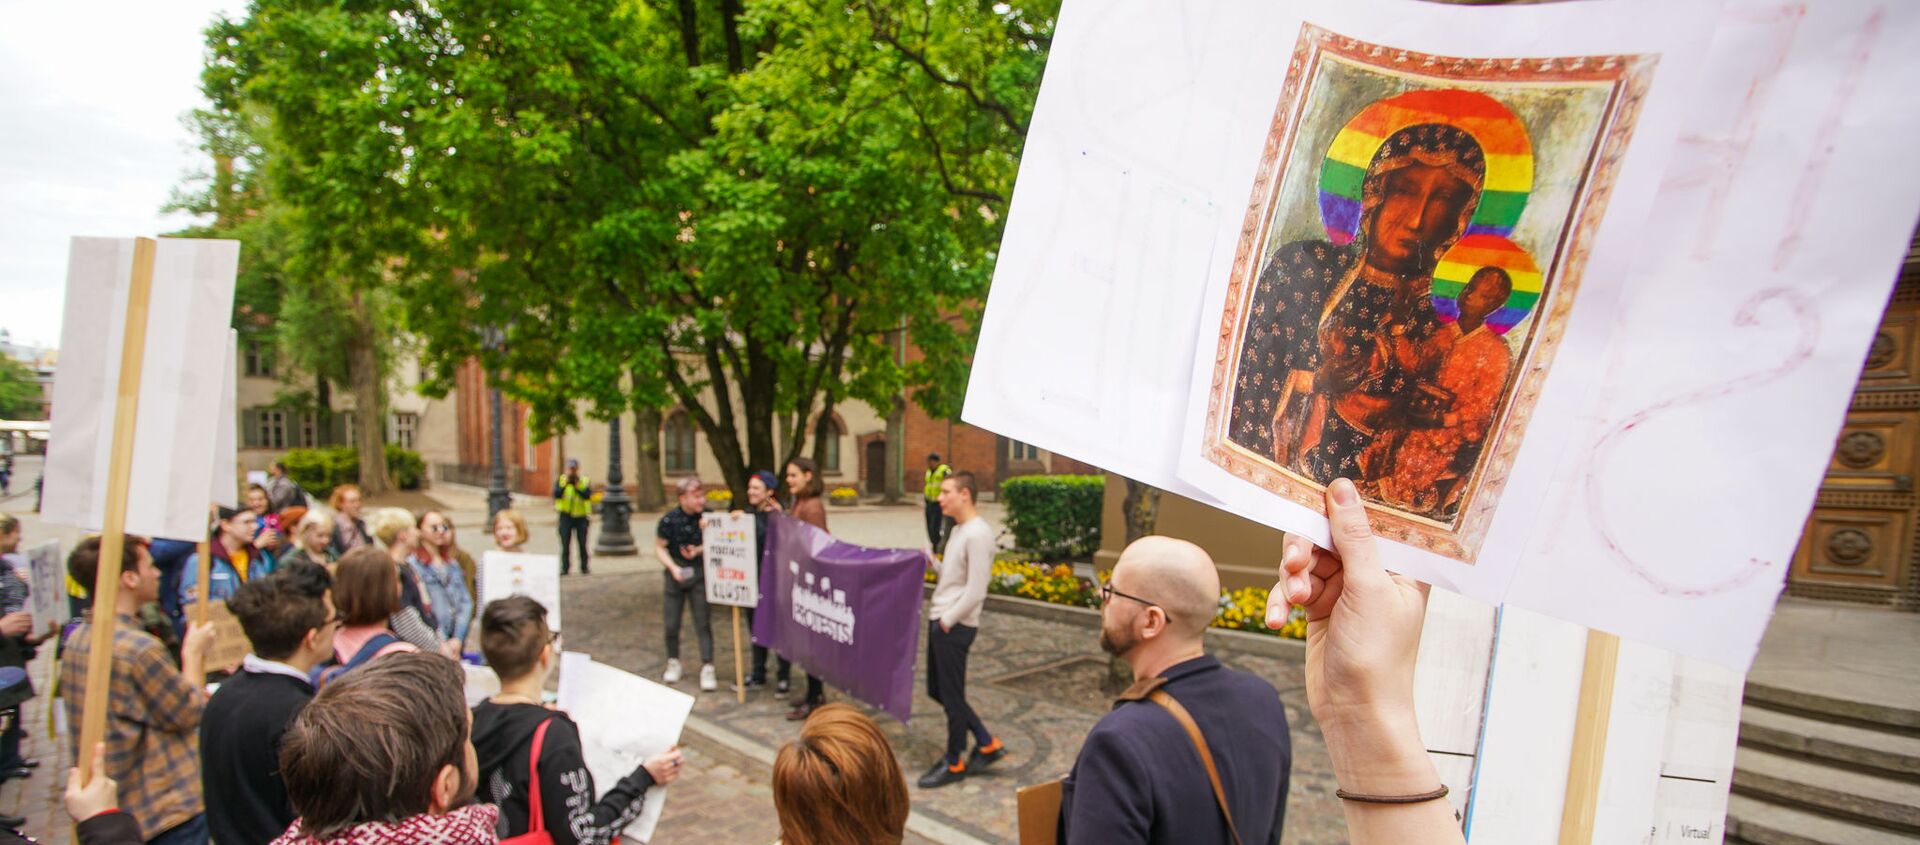  Пикет молодежной организации Протест за права представителей ЛГБТ - Sputnik Латвия, 1920, 01.03.2021